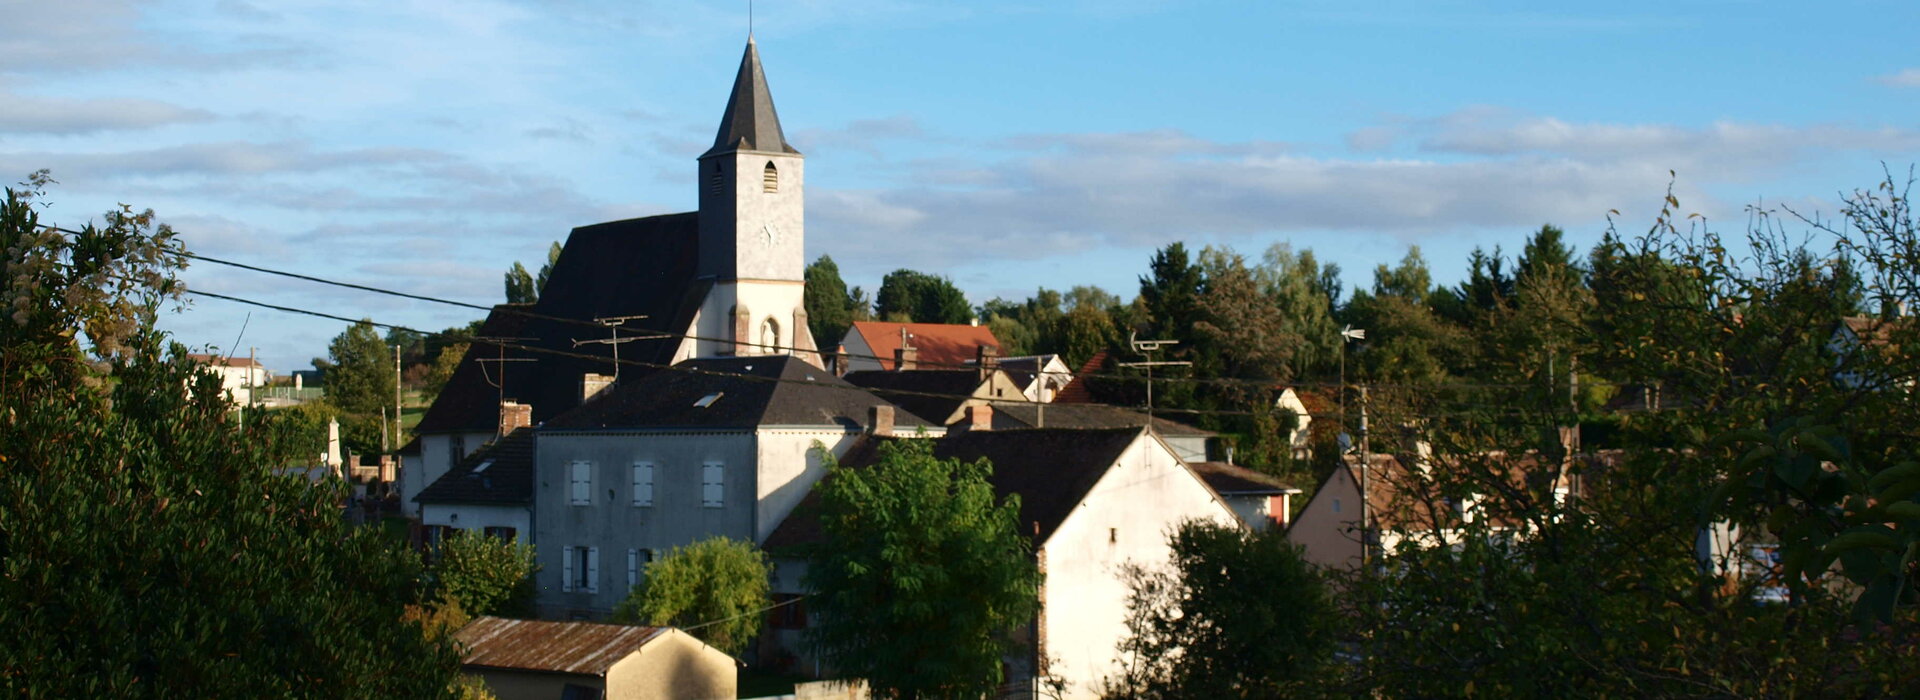 Eglise de Saint-Firmin-des-Bois